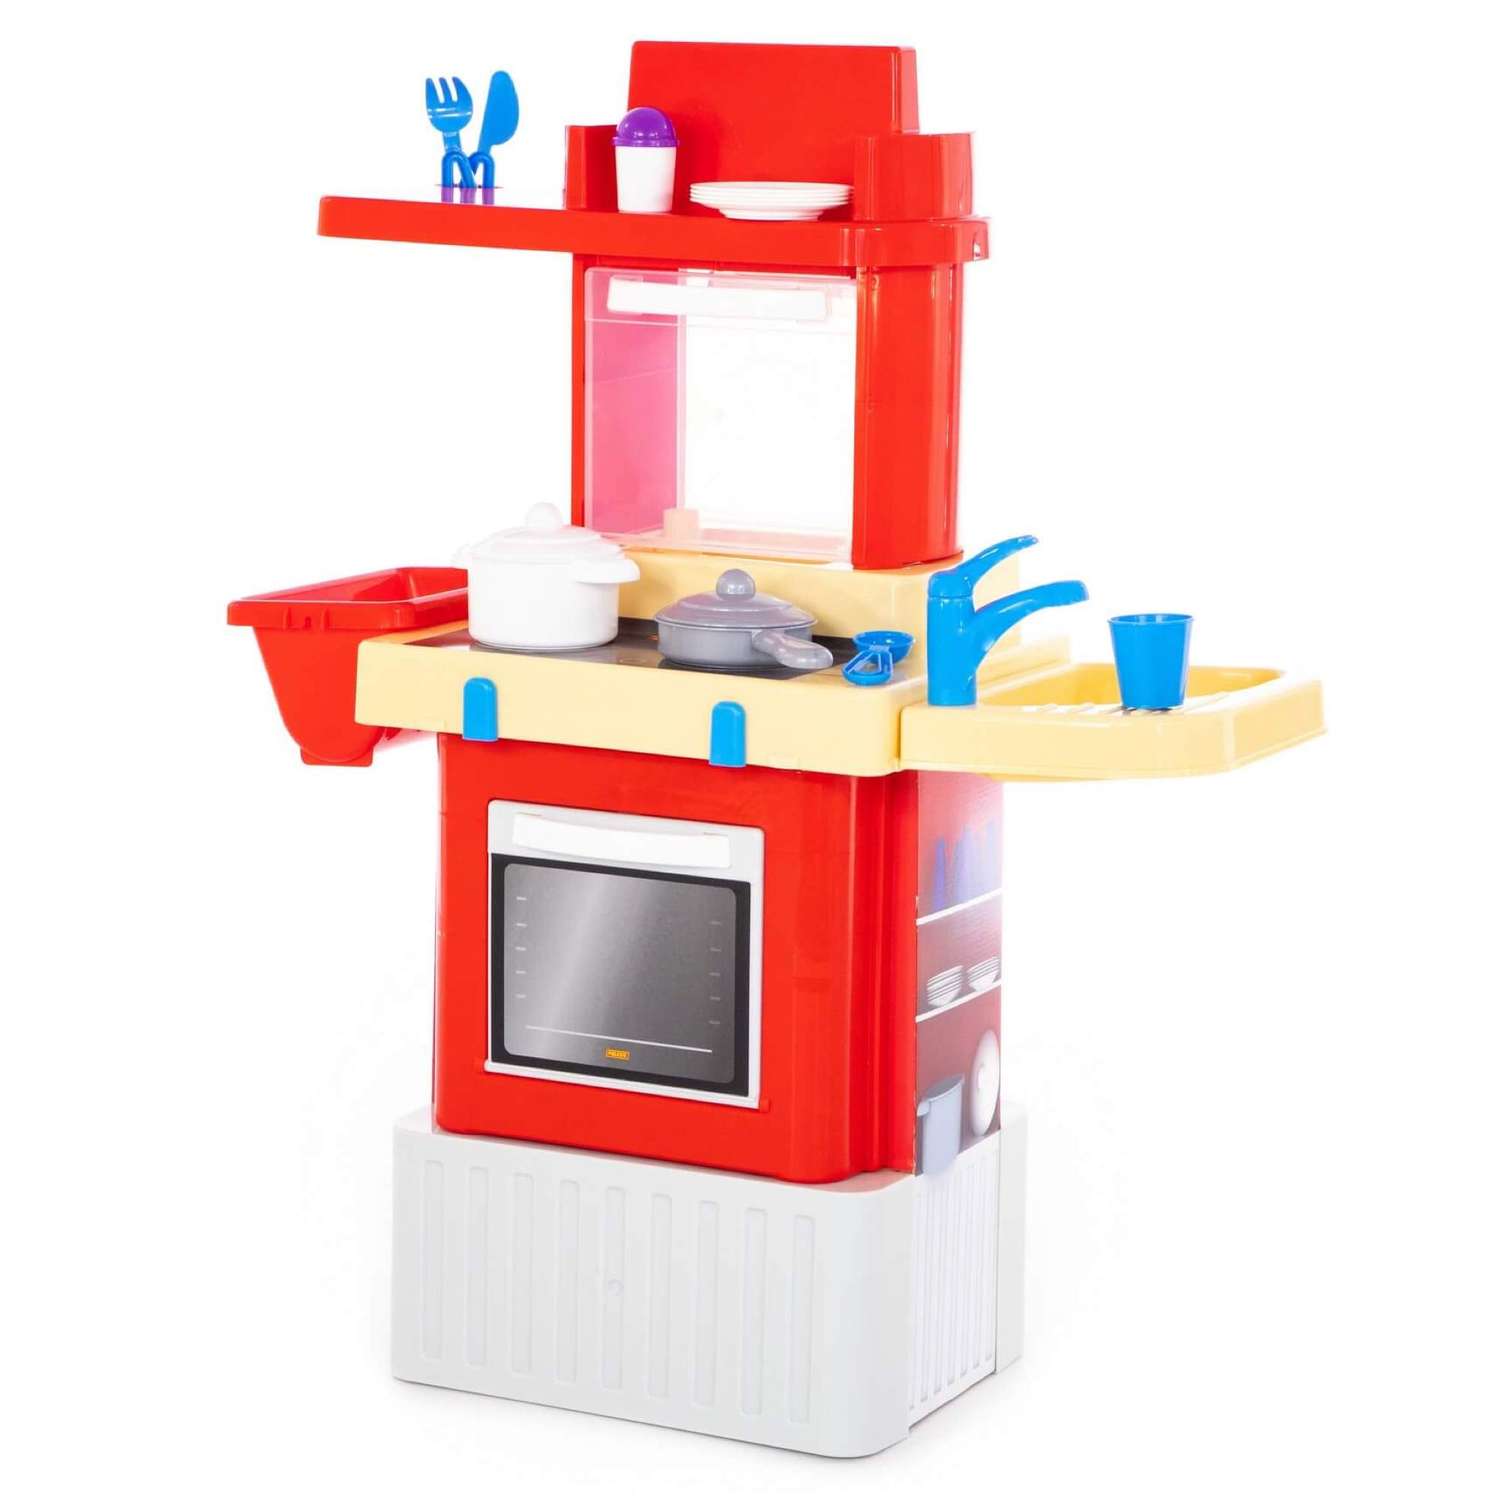 Игровой набор Полесье детская кухня с игрушечной посудой INFINITY basic - фото 1